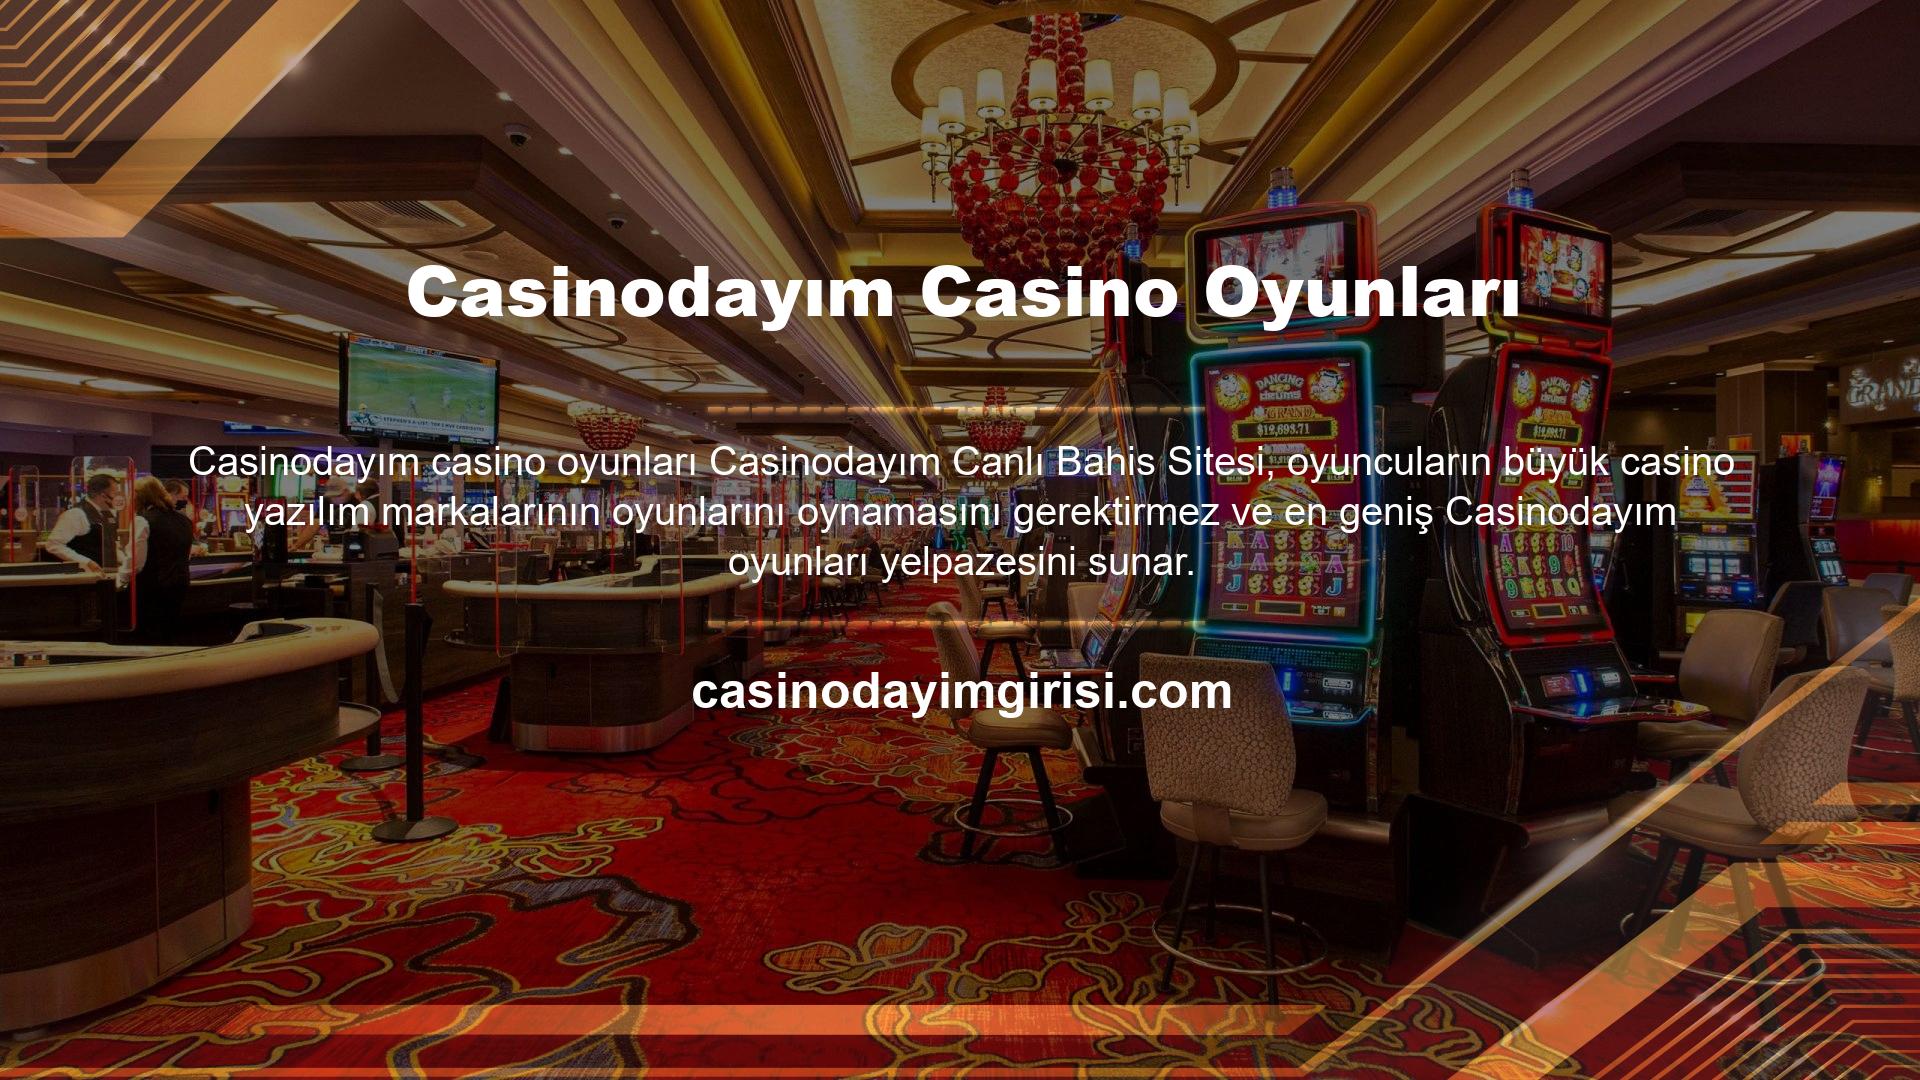 Ayrıca web sitesine ve mobil arayüze oyun arama özelliği eklenerek oyuncuların aradıkları casino oyunlarına ulaşmaları kolaylaştırılmıştır